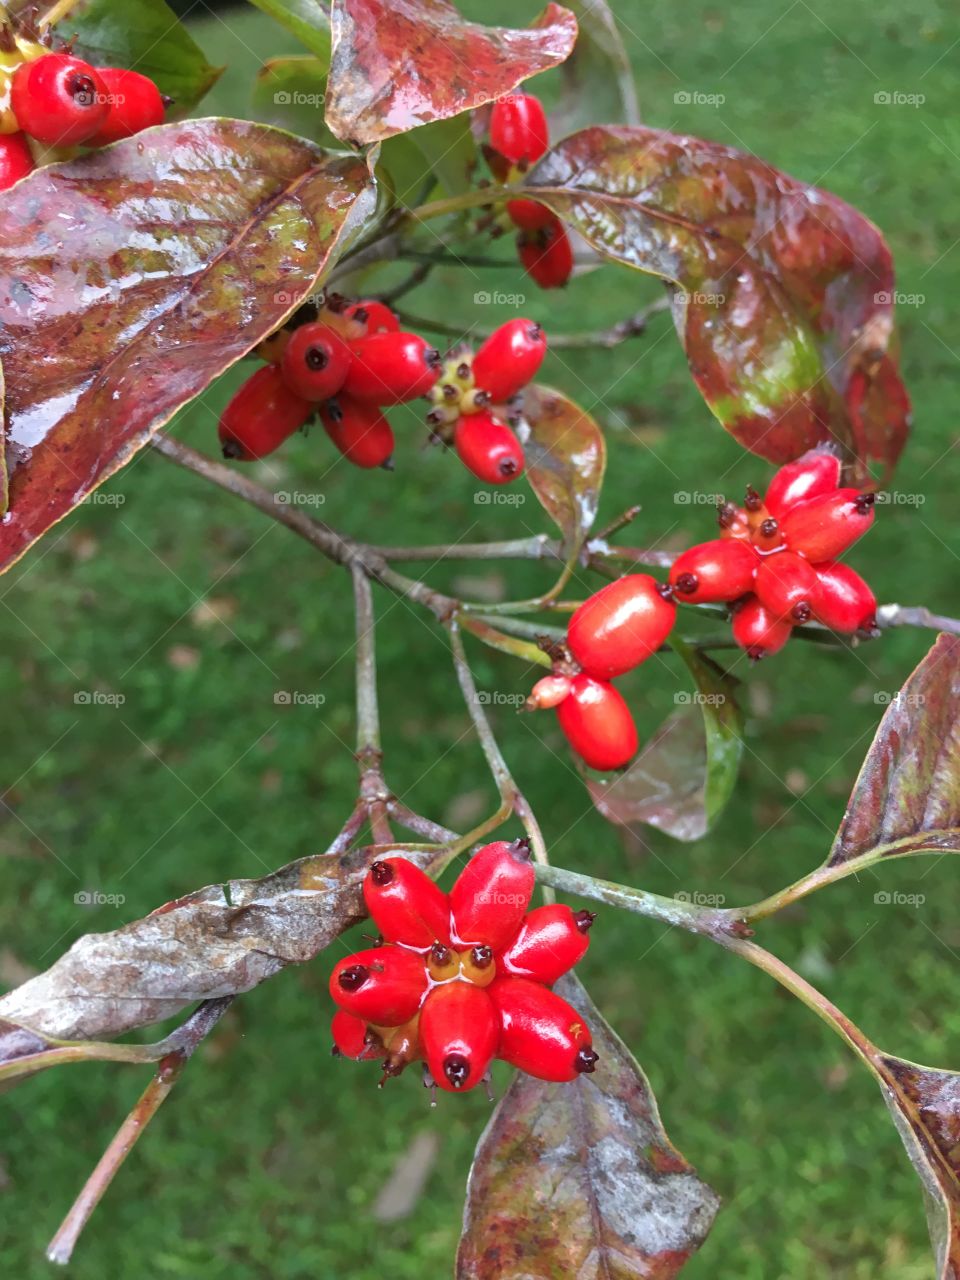 Dogwood berries in the rain